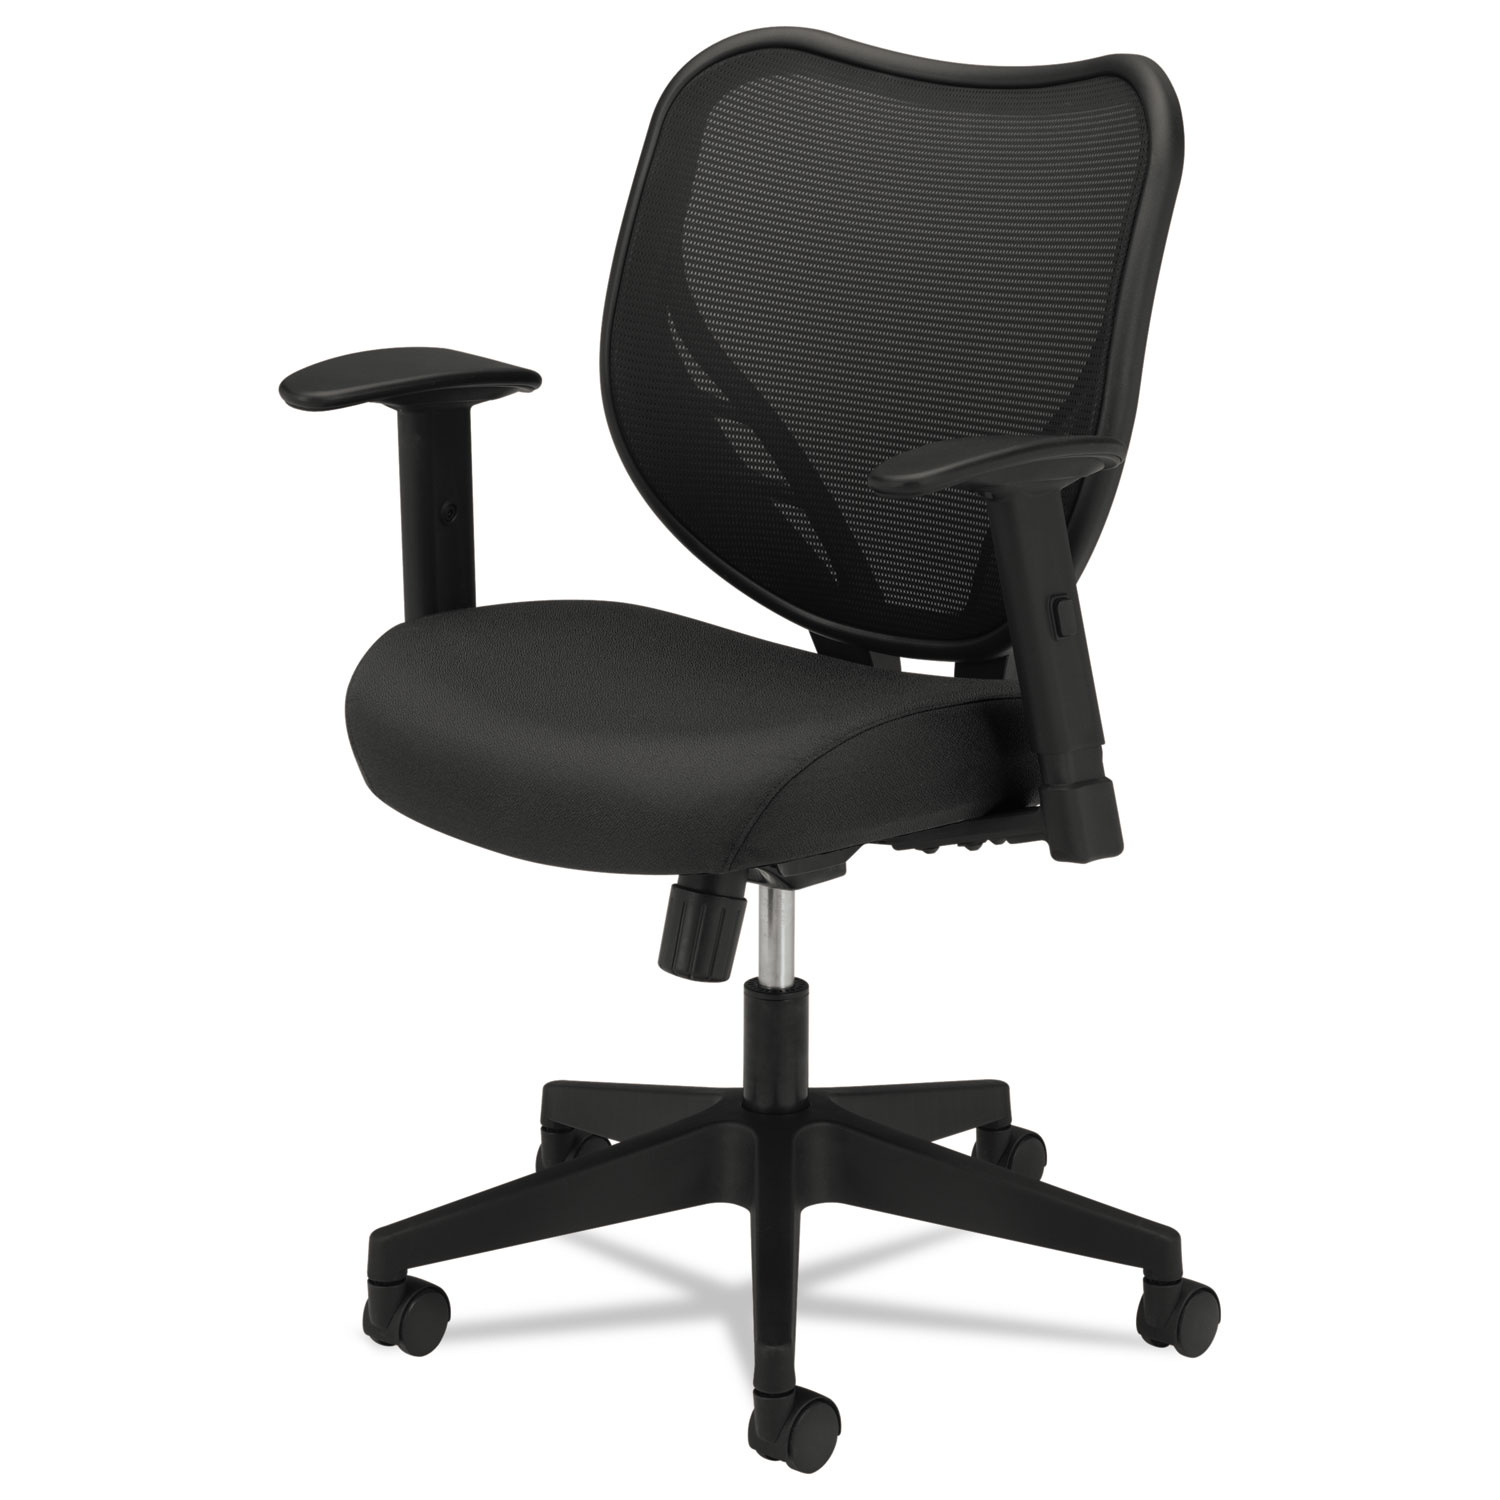 VL551 Series Mid-Back Swivel/Tilt Chair, Fabric Seat, Mesh Back, Black